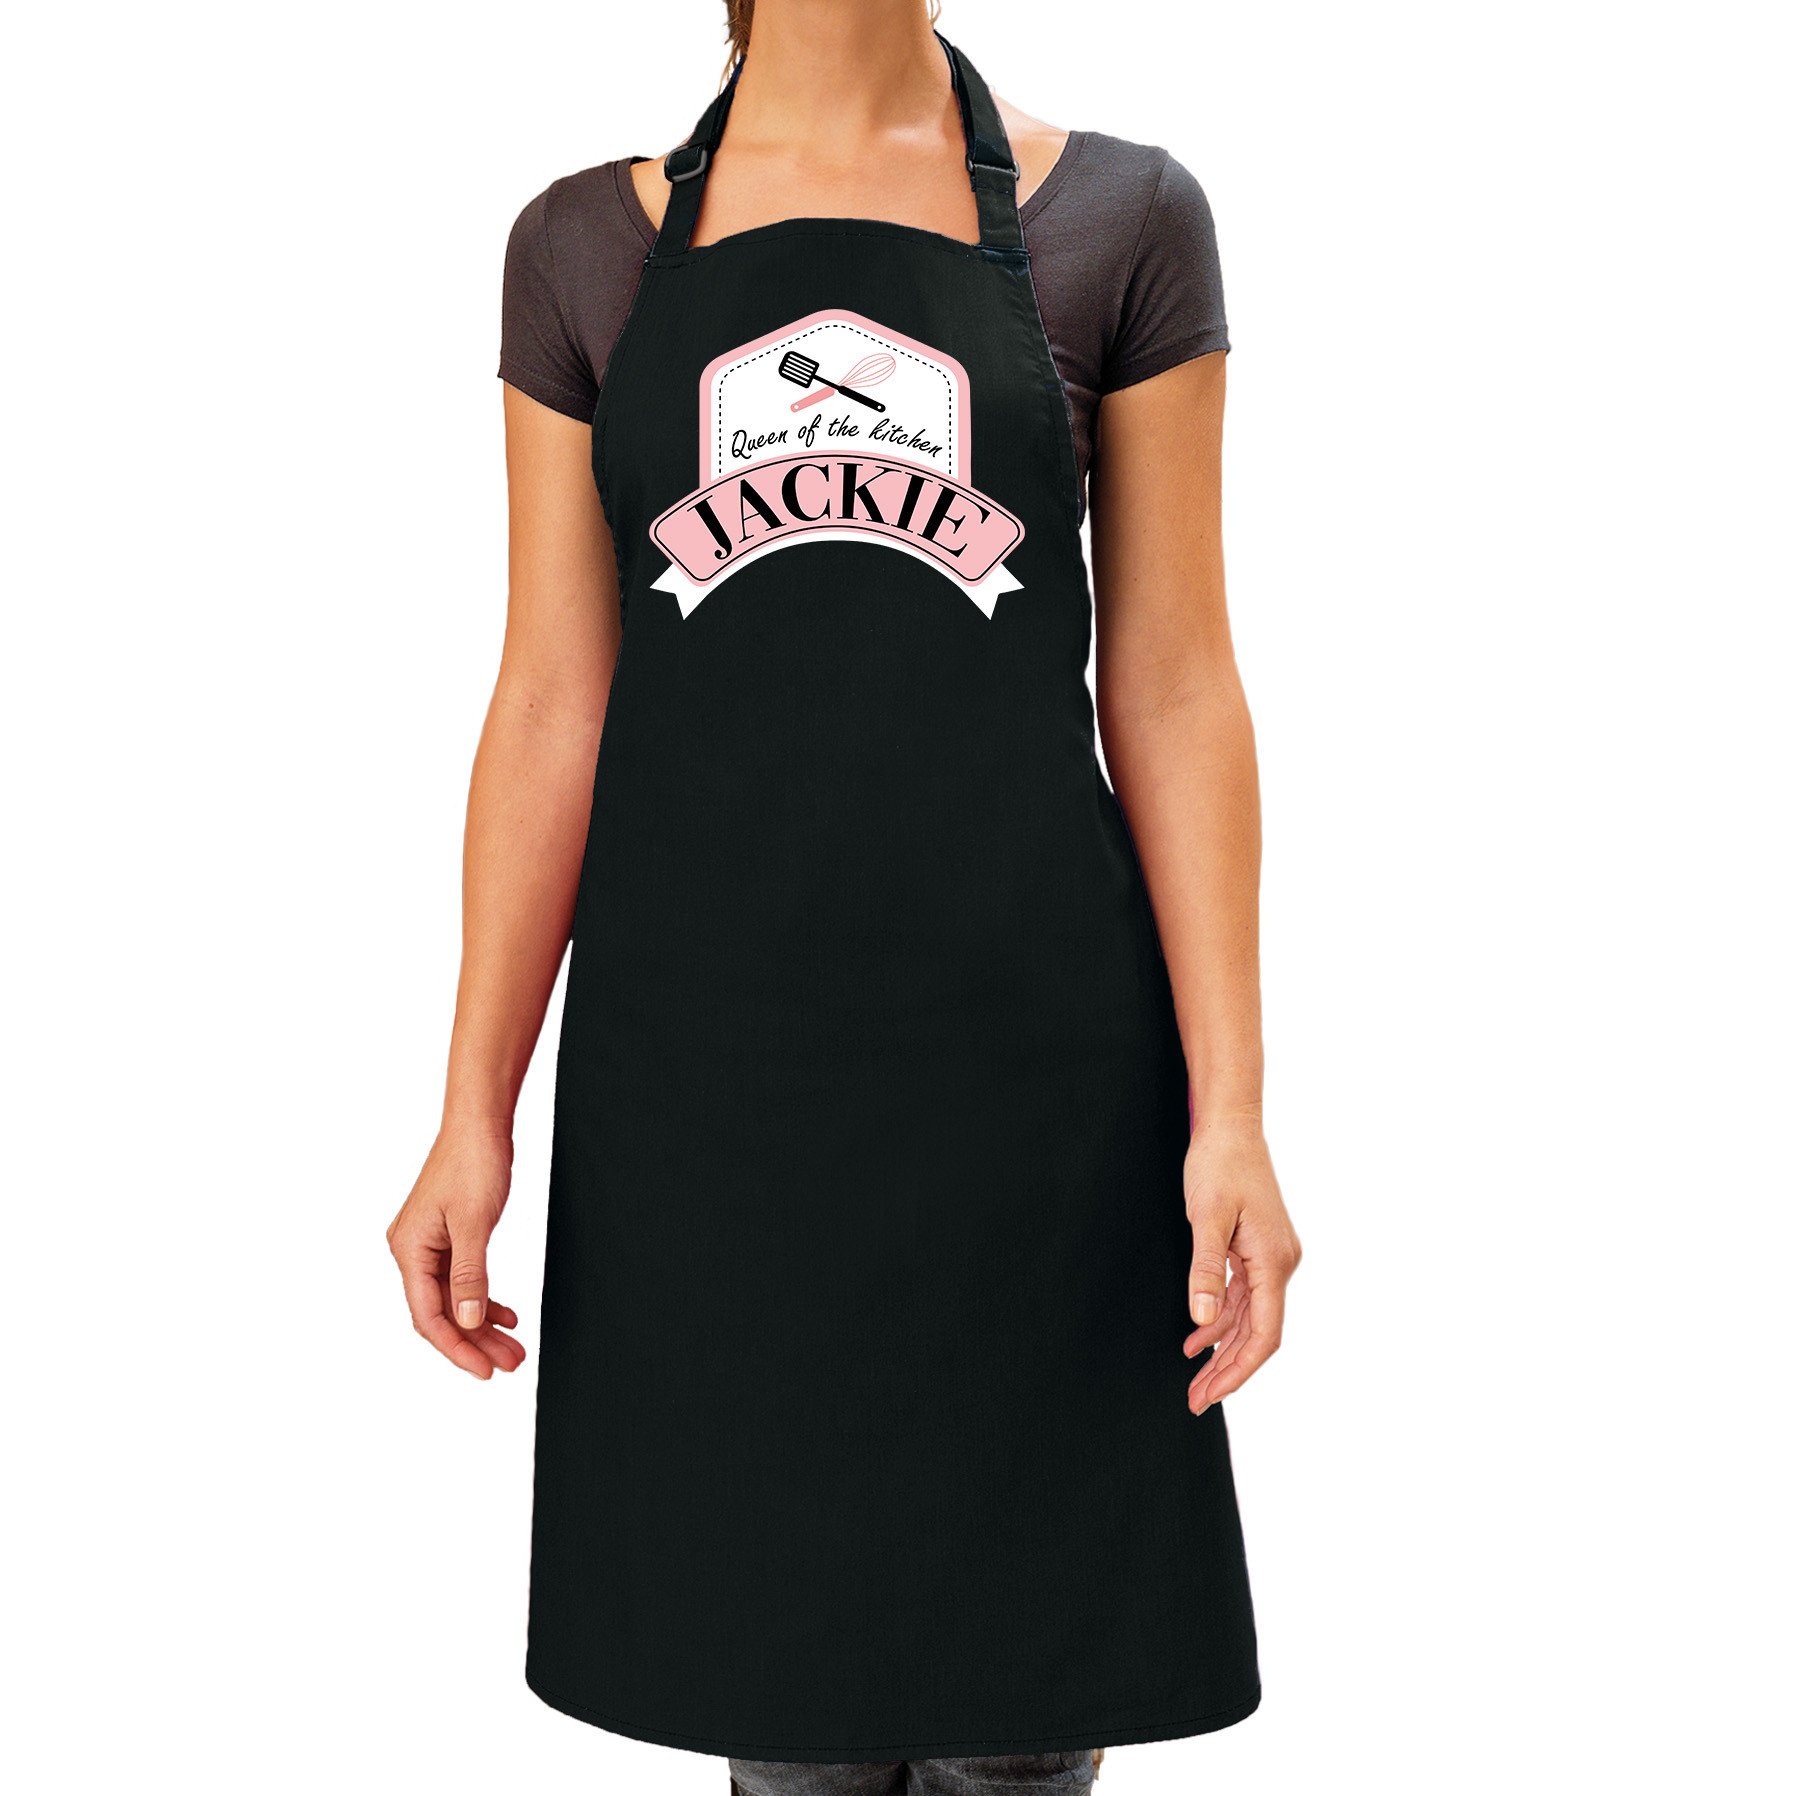 Queen of the kitchen Jackie keukenschort- barbecue schort zwart voor dames